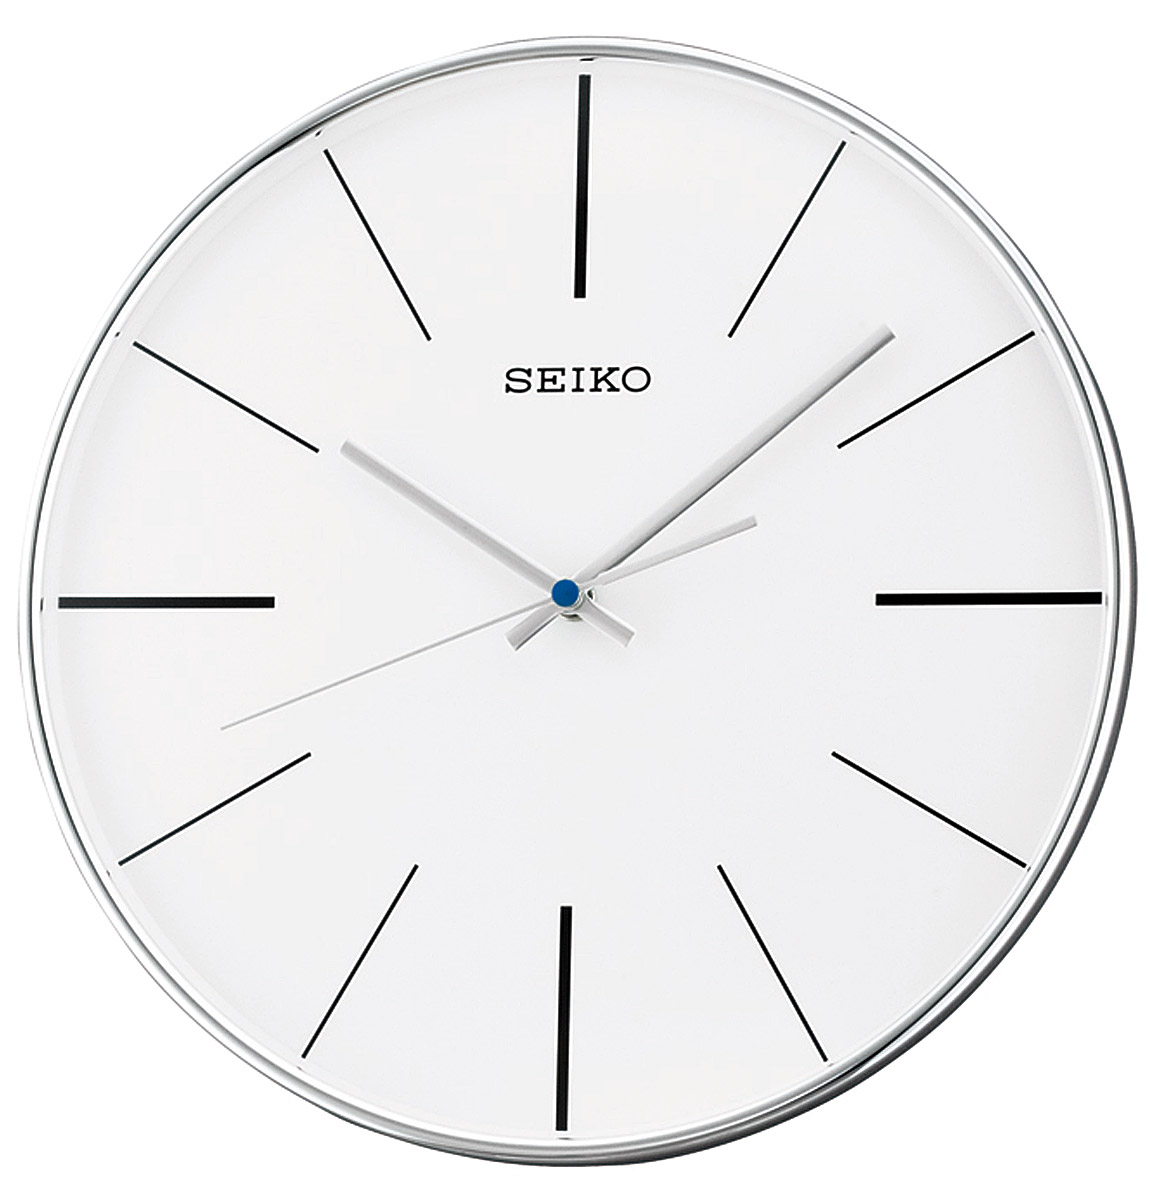 Варианты циферблата. Настенные часы Seiko qxa634a. Часы настенные кварцевые Seiko qxa653k. Настенные часы Seiko qxa020s. Настенные часы Seiko qxa342s.